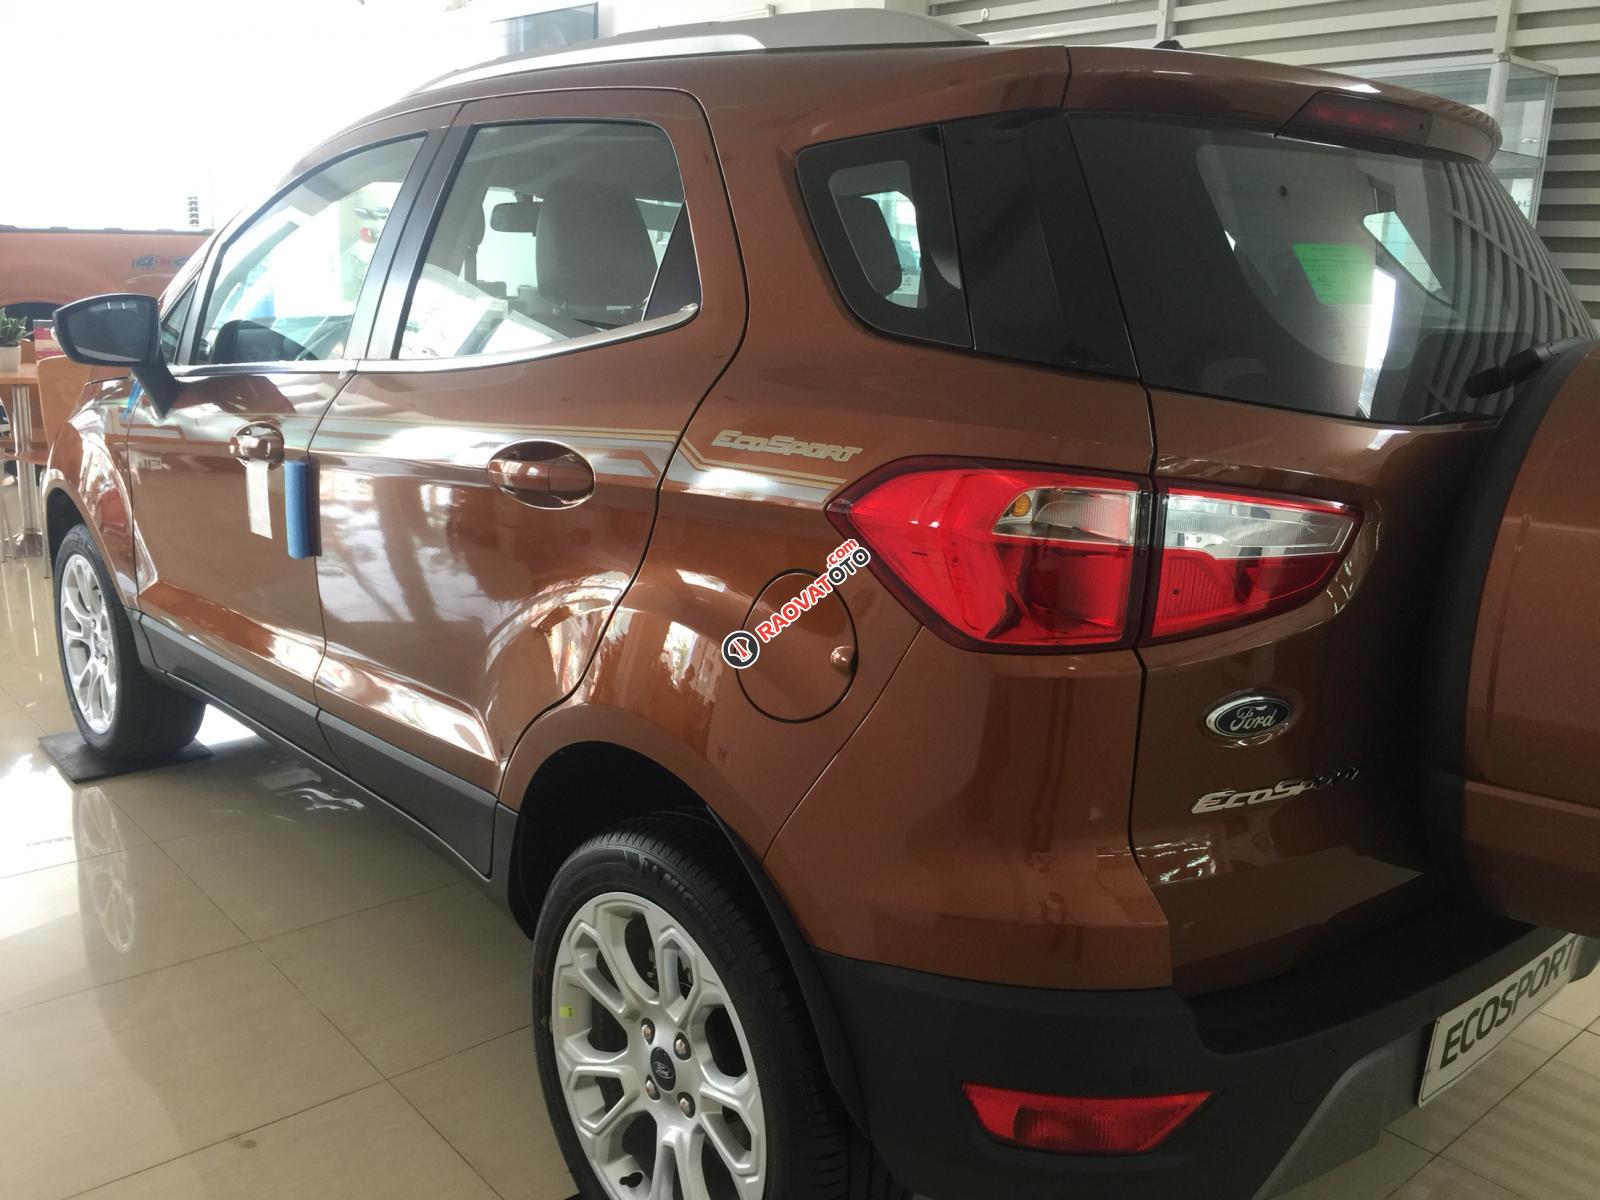 Bán Ford Ecosport 1.5 Titanium 2019 màu đỏ đồng, giảm 53tr, tặng bảo hiểm thân vỏ-3